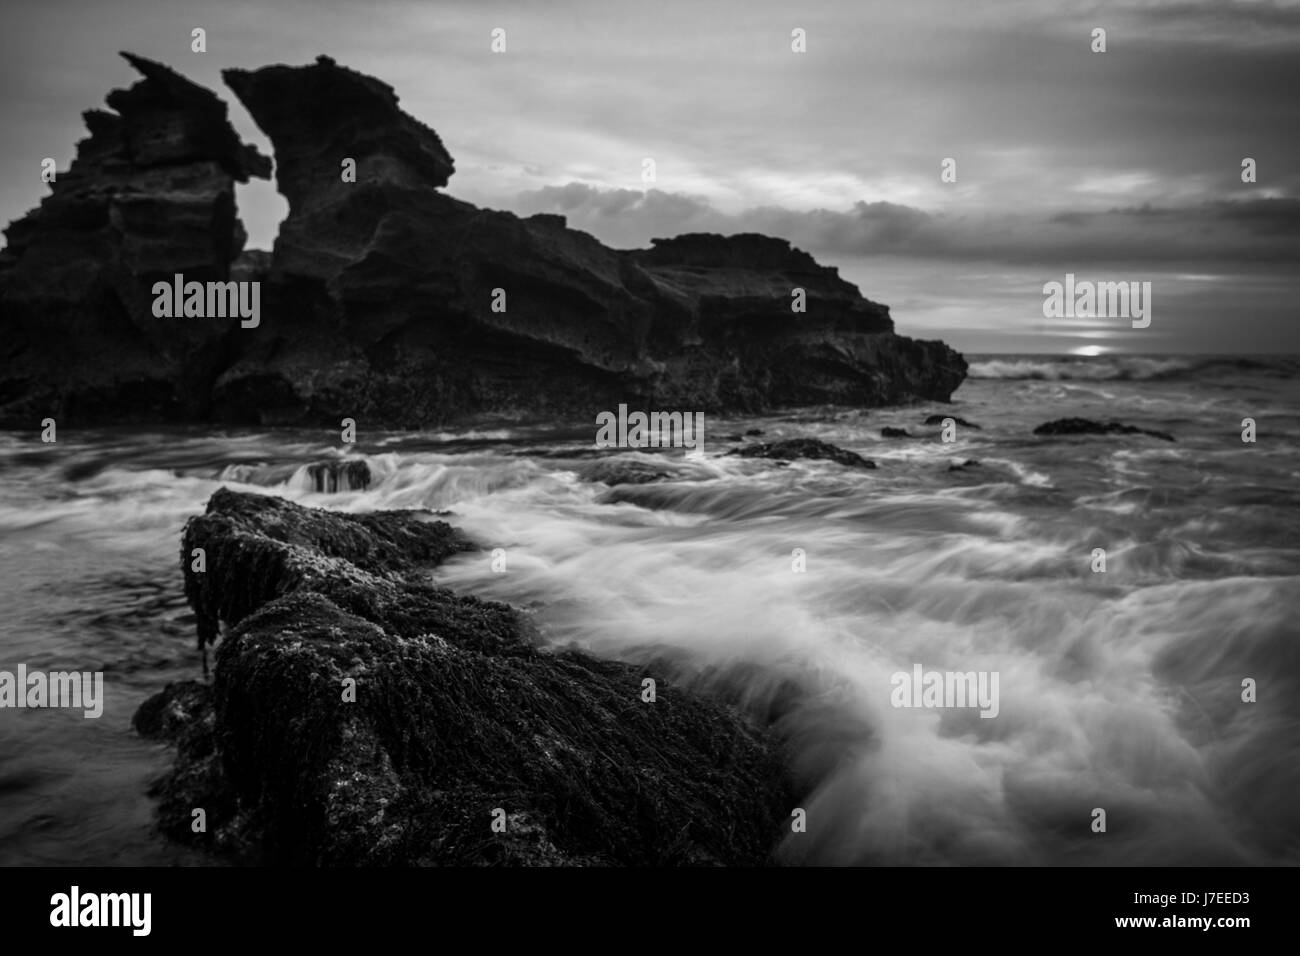 Une image en noir et blanc de forme inhabituelle de la pile de la mer au large des côtes de l'Indonésie Balinais avec un effet de l'exposition Création de mouvement de l'onde Banque D'Images